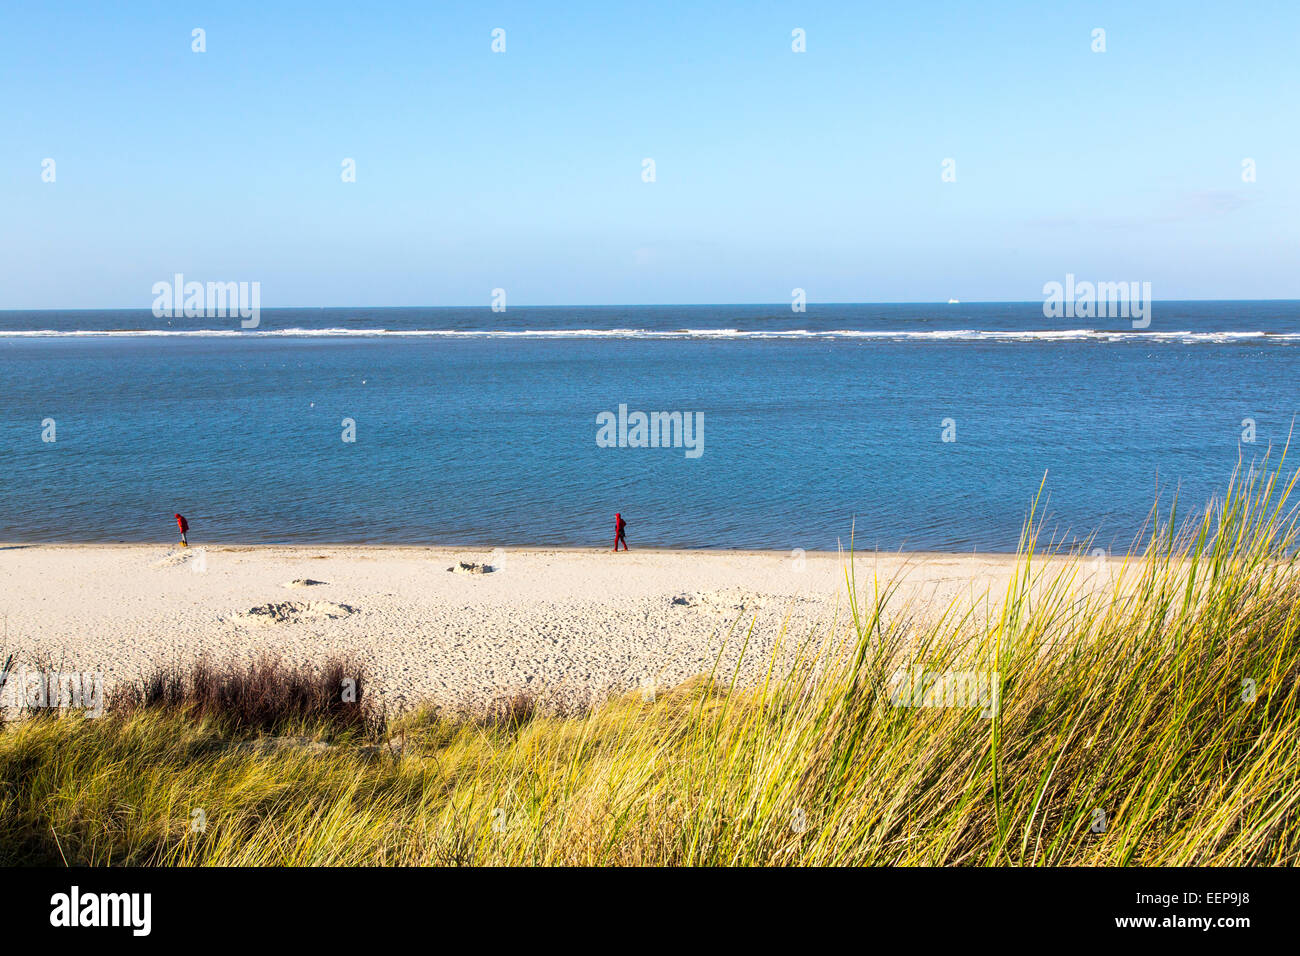 Nel mare del Nord tedesco isola Spiekeroog, west coast beach, dune, Foto Stock